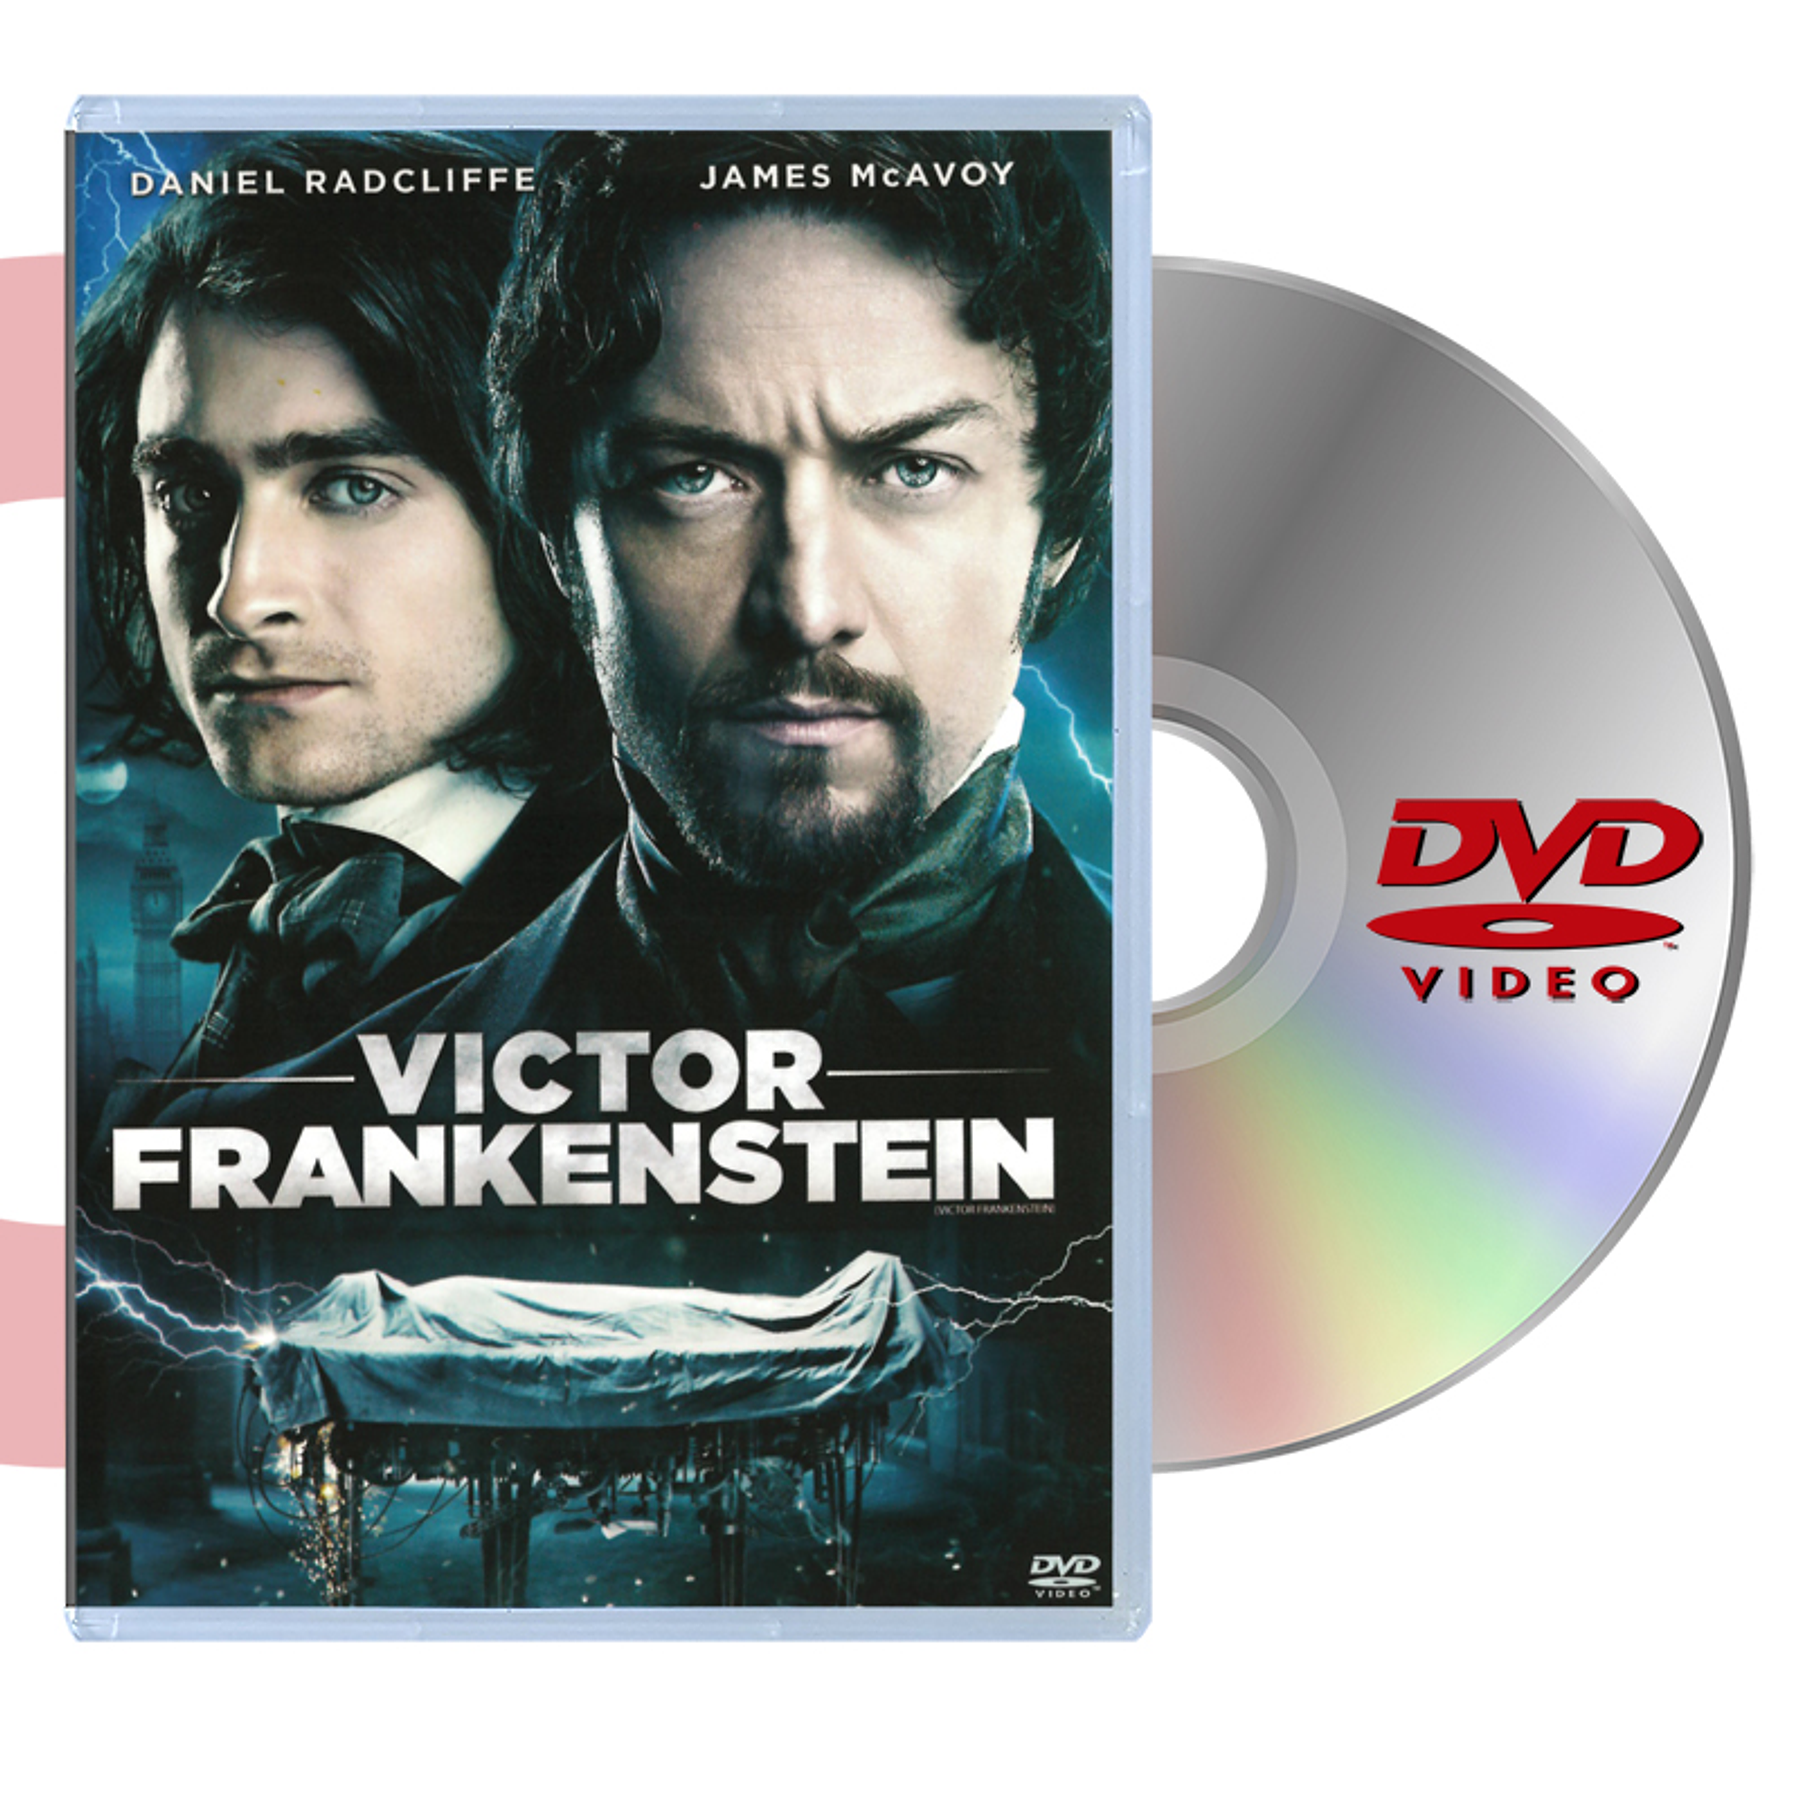 DVD VICTOR FRANKENSTEIN